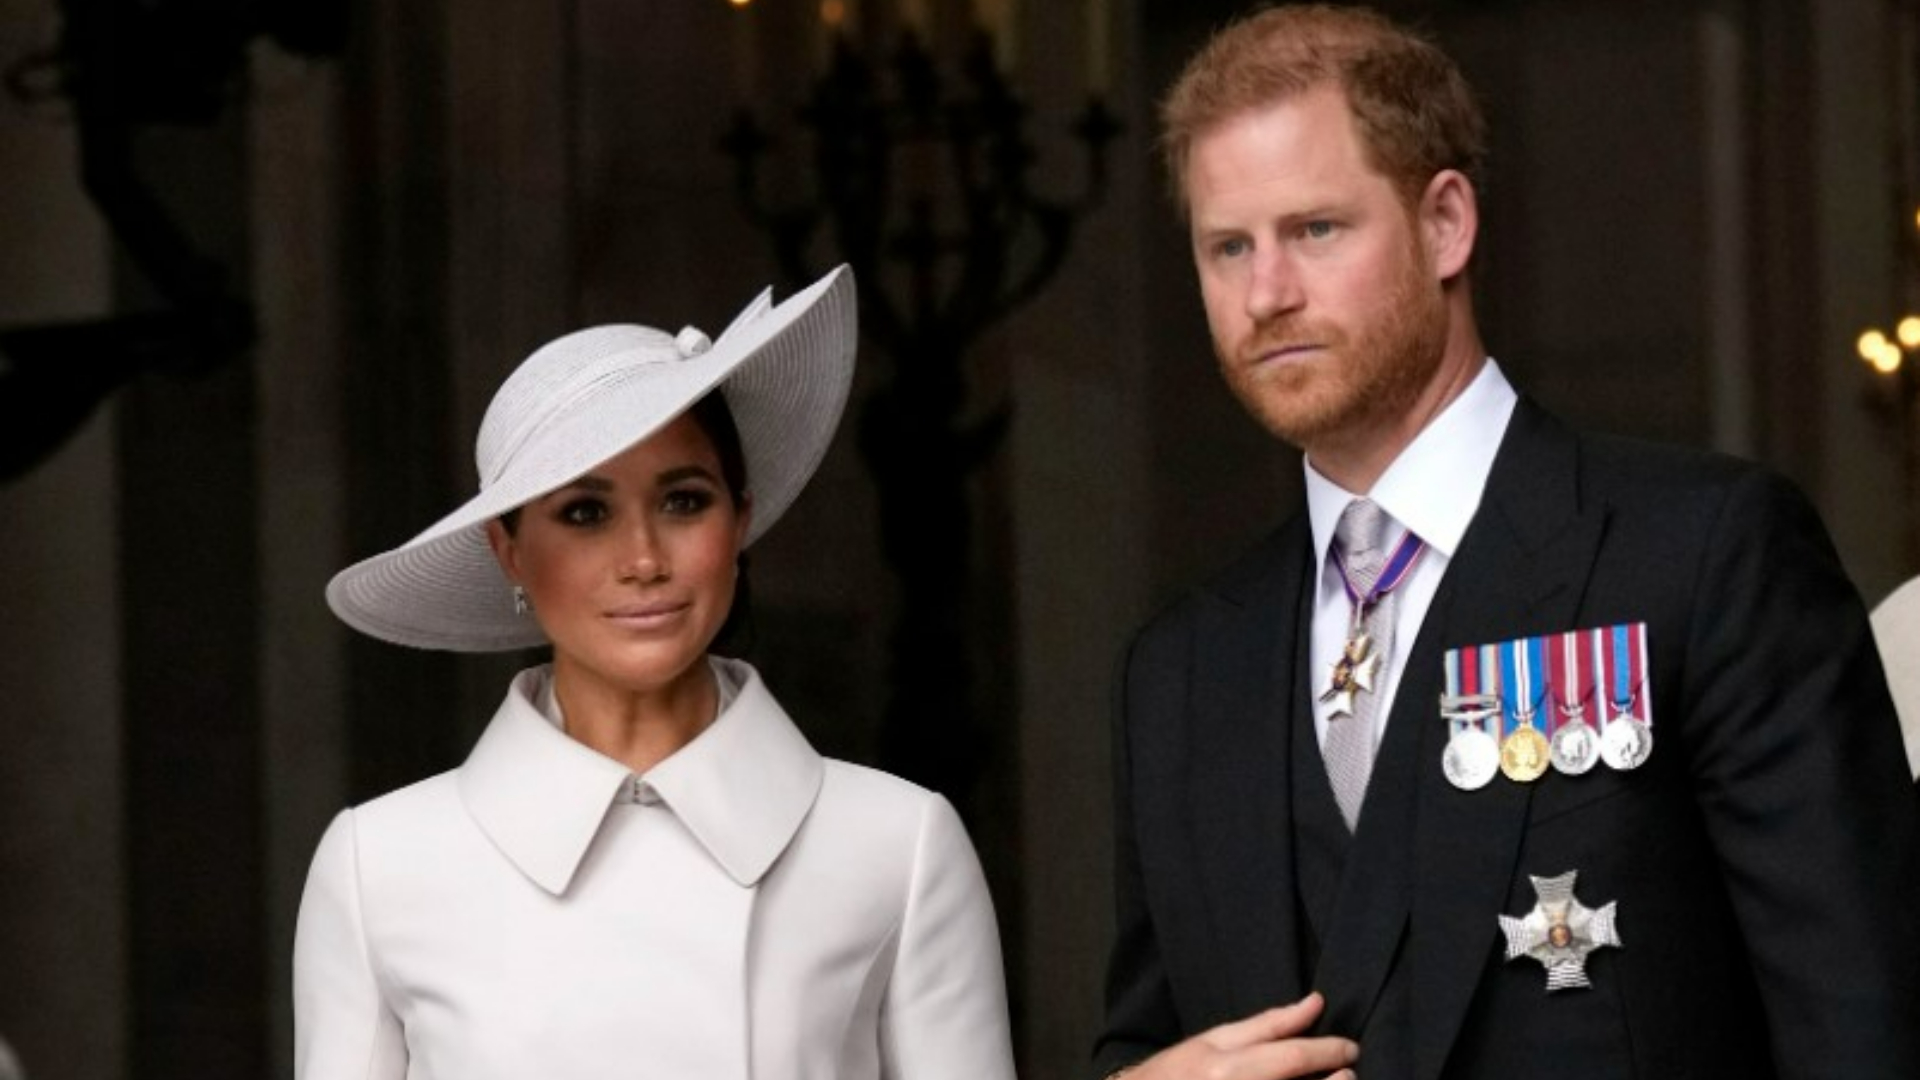 El príncipe Harry ya deseaba salir de la familia real mucho antes de conocer a Meghan Markle